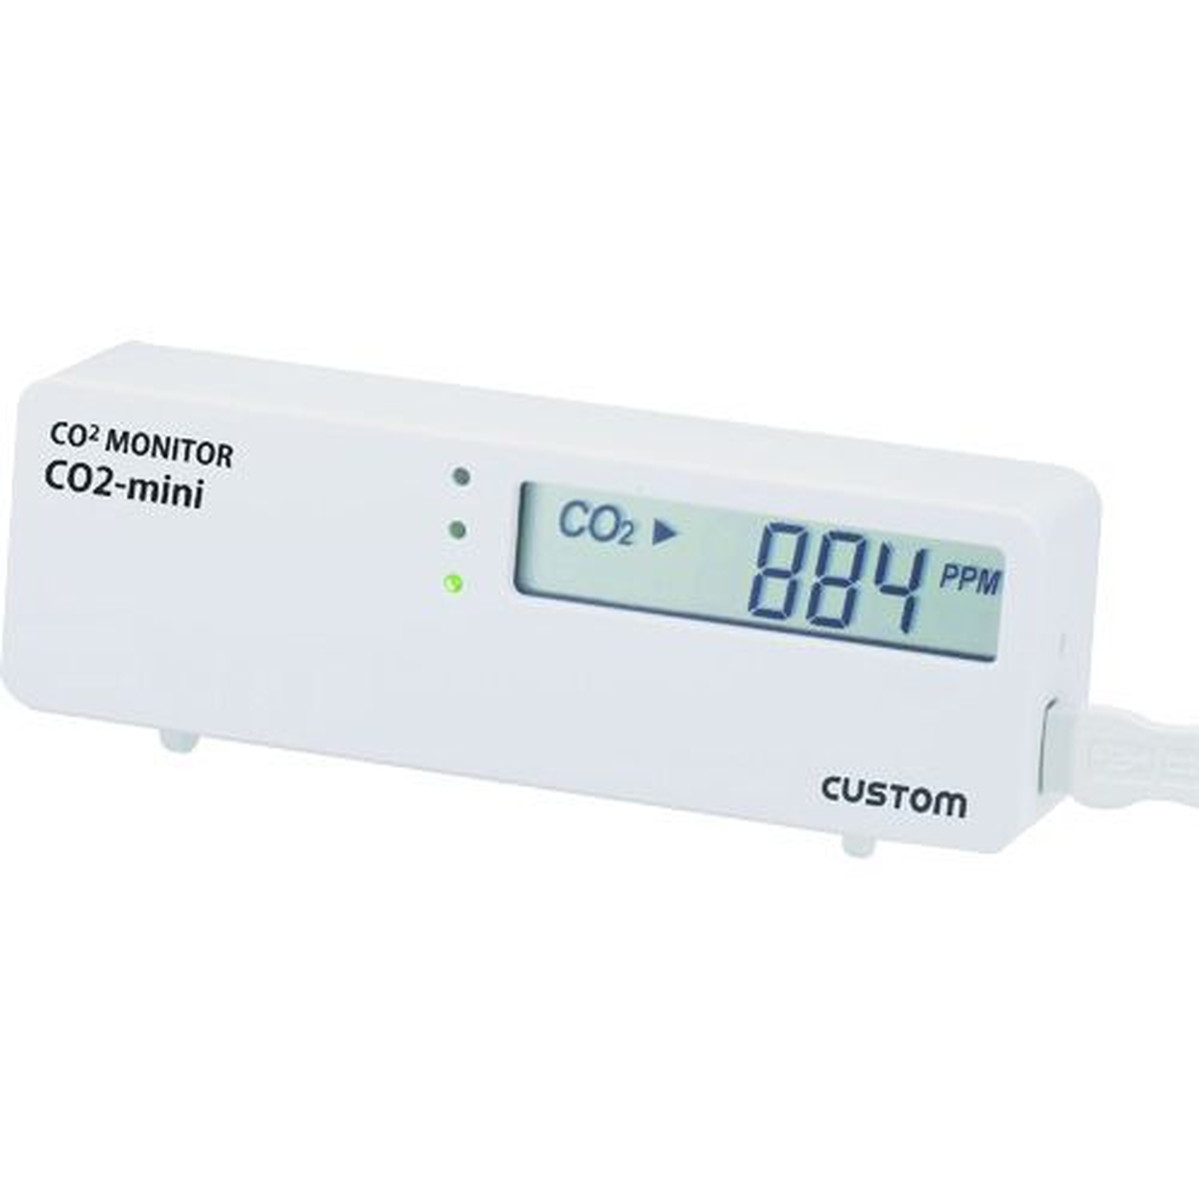 カスタム CO2モニター 1個 (CO2-MINI)